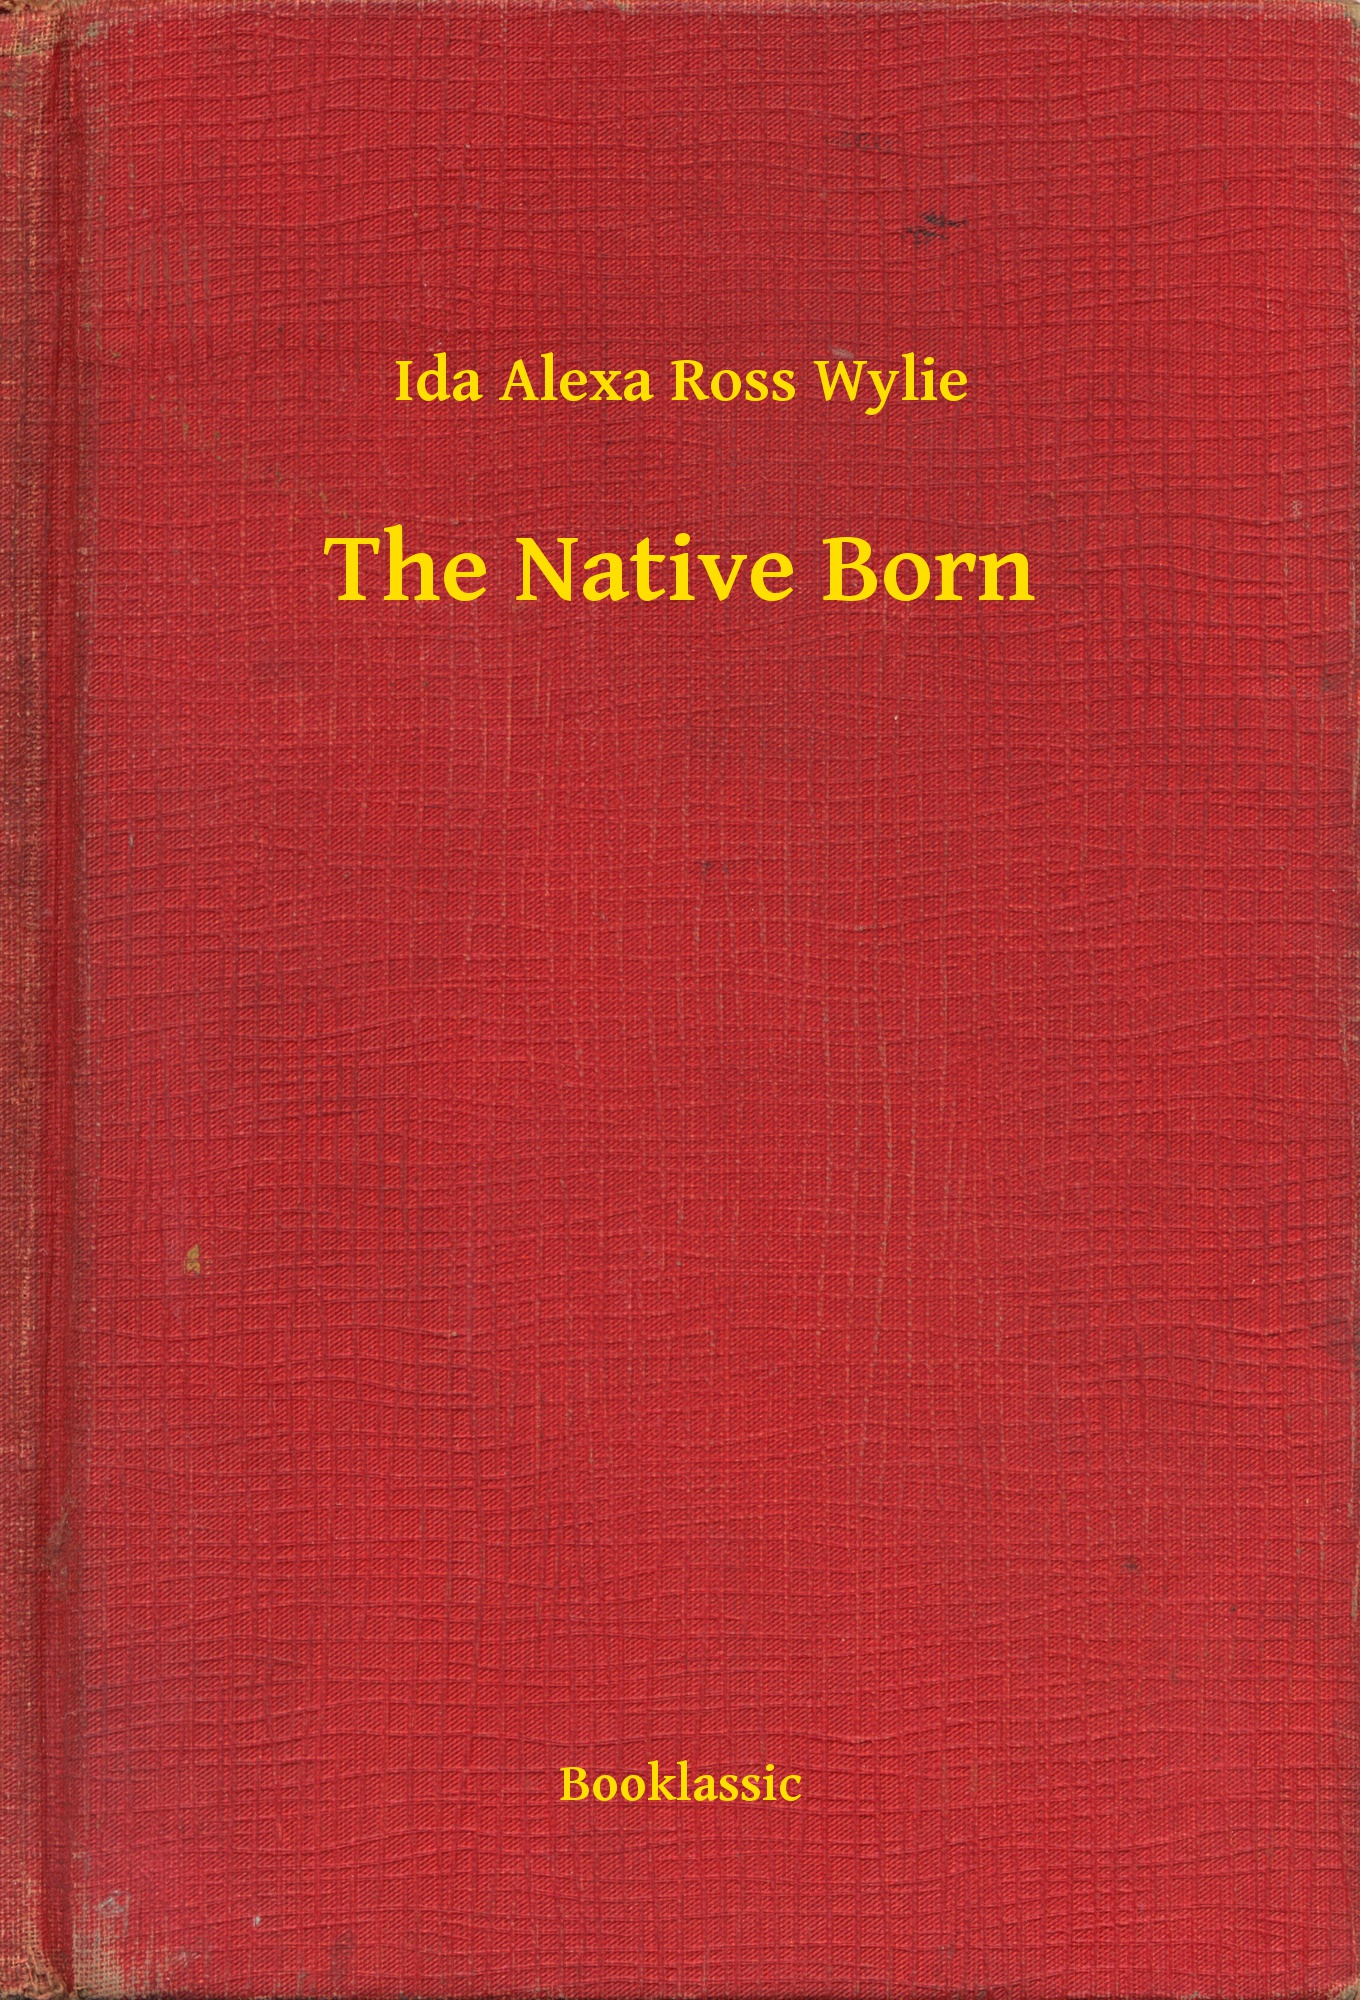 The Native Born